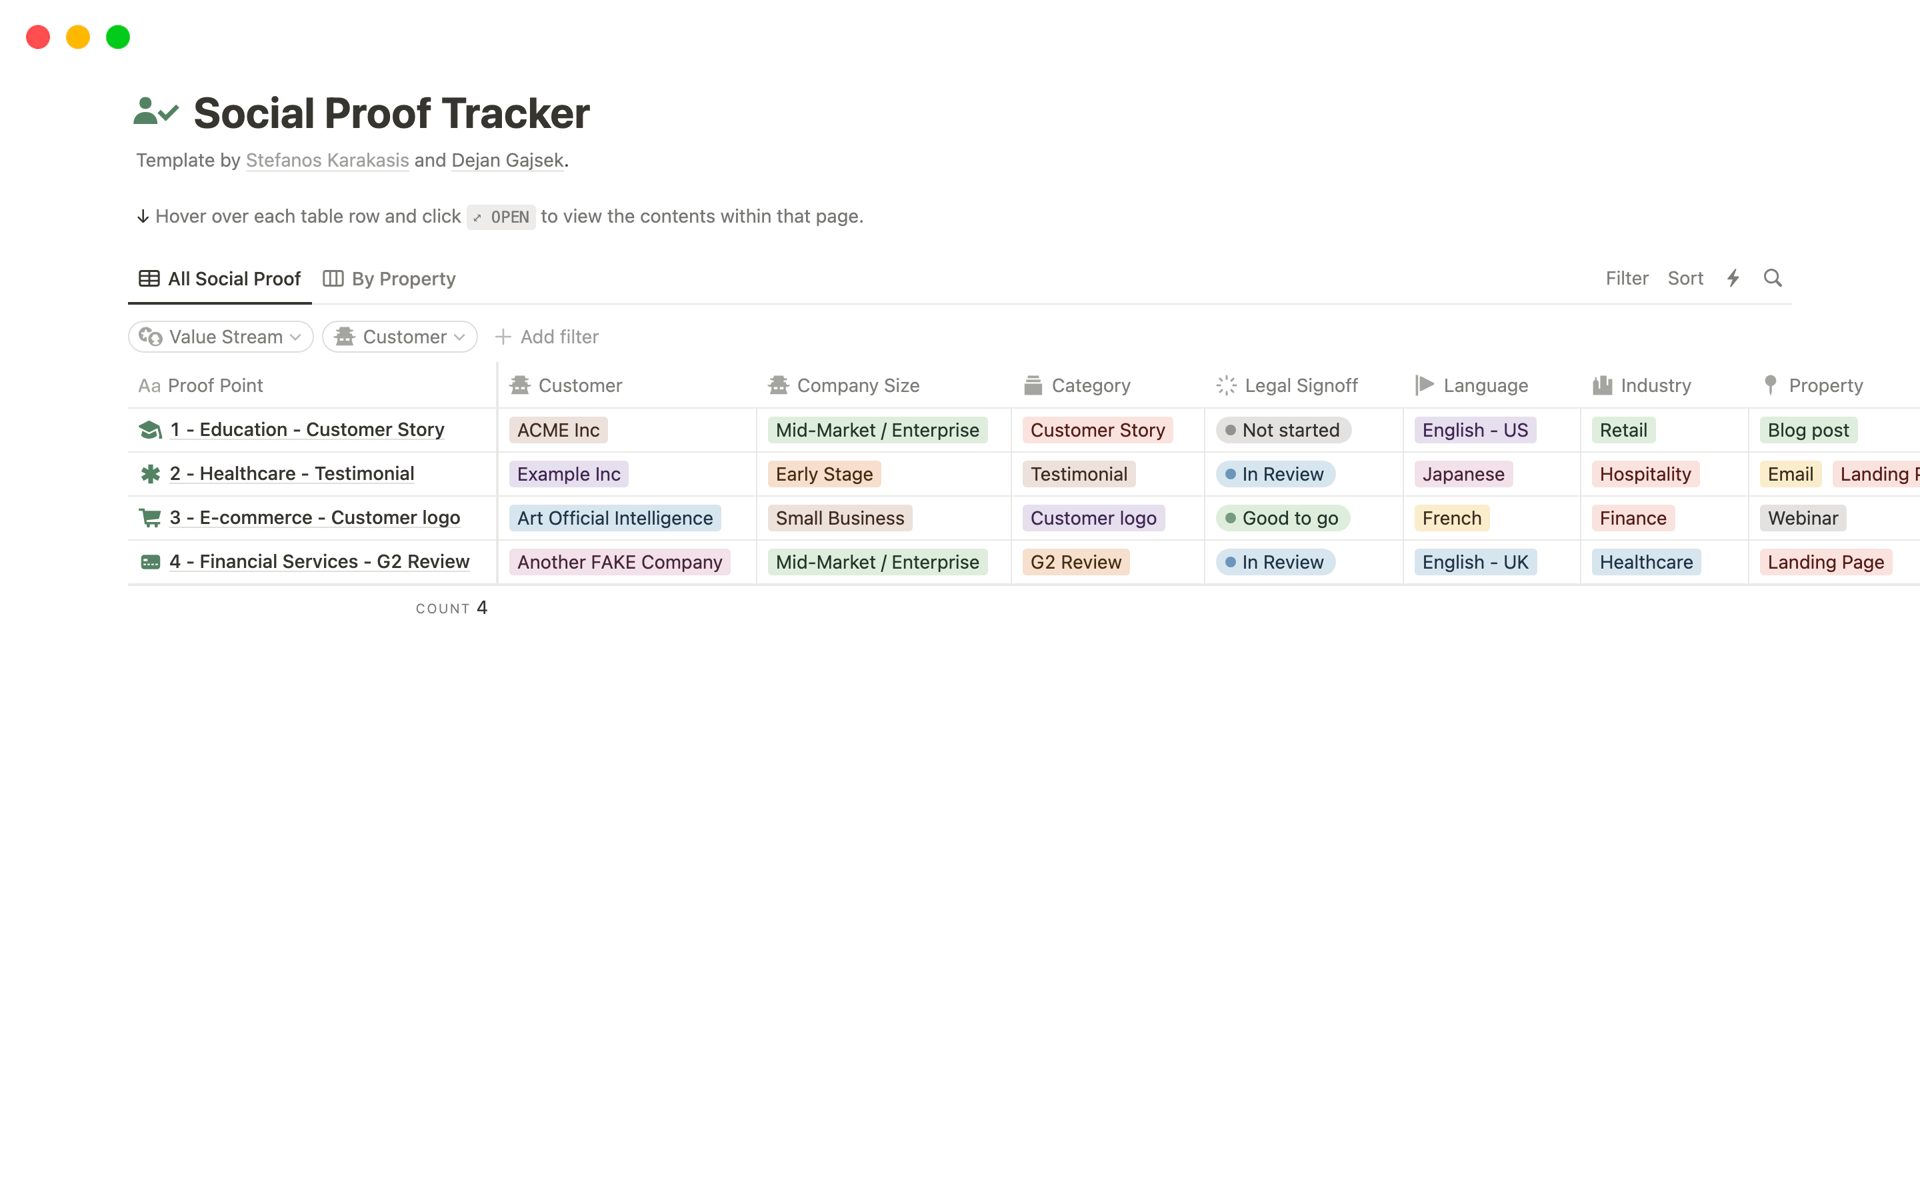 Vista previa de una plantilla para Social Proof Tracker